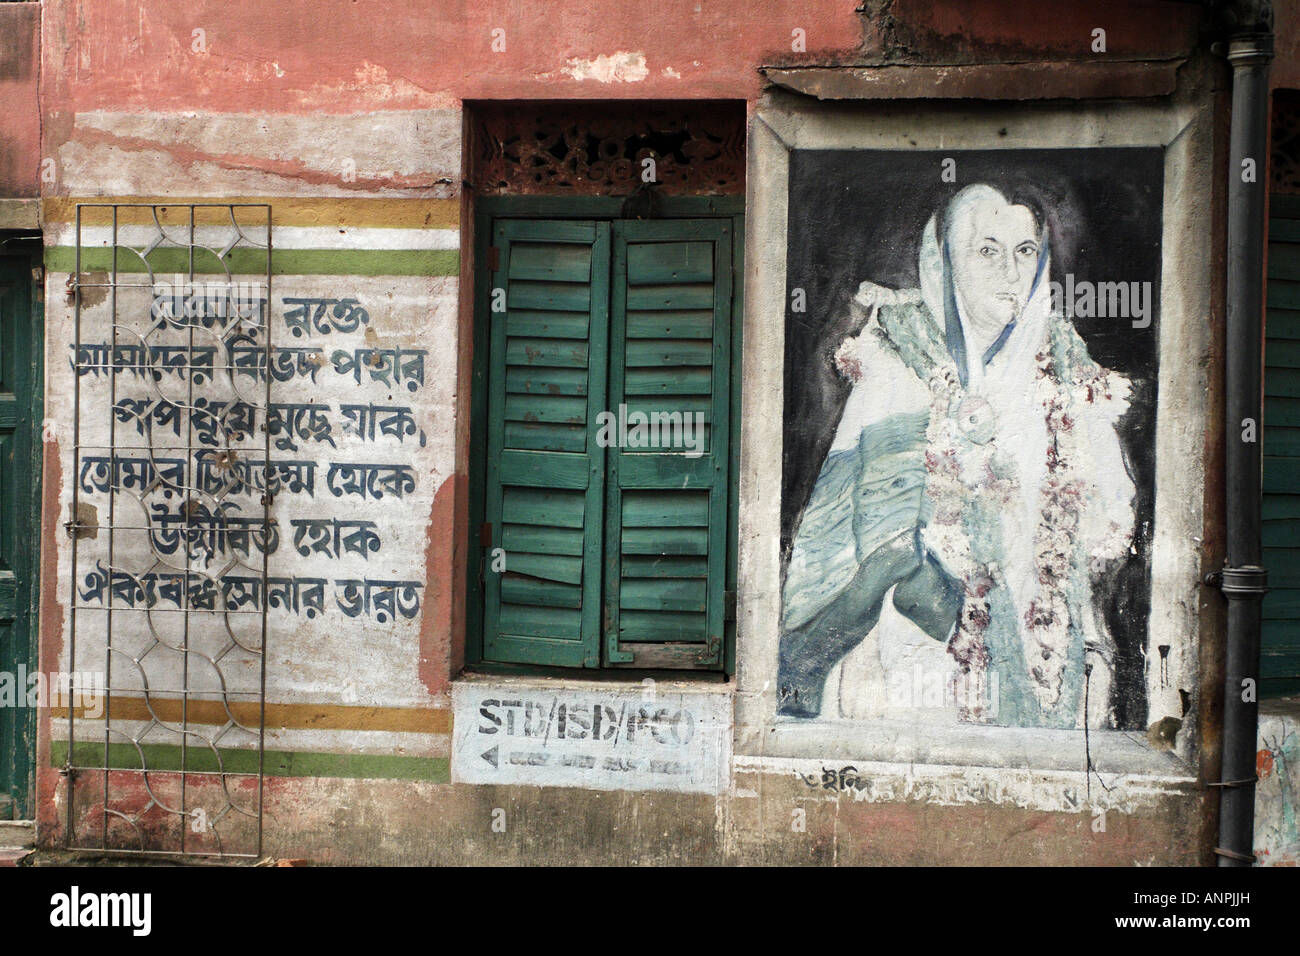 Bengali schreiben und ein Bild von dem späten indischen Premierminister Indira Gandhi, auf ein Streetside im Stadtteil Tollygunge. Stockfoto